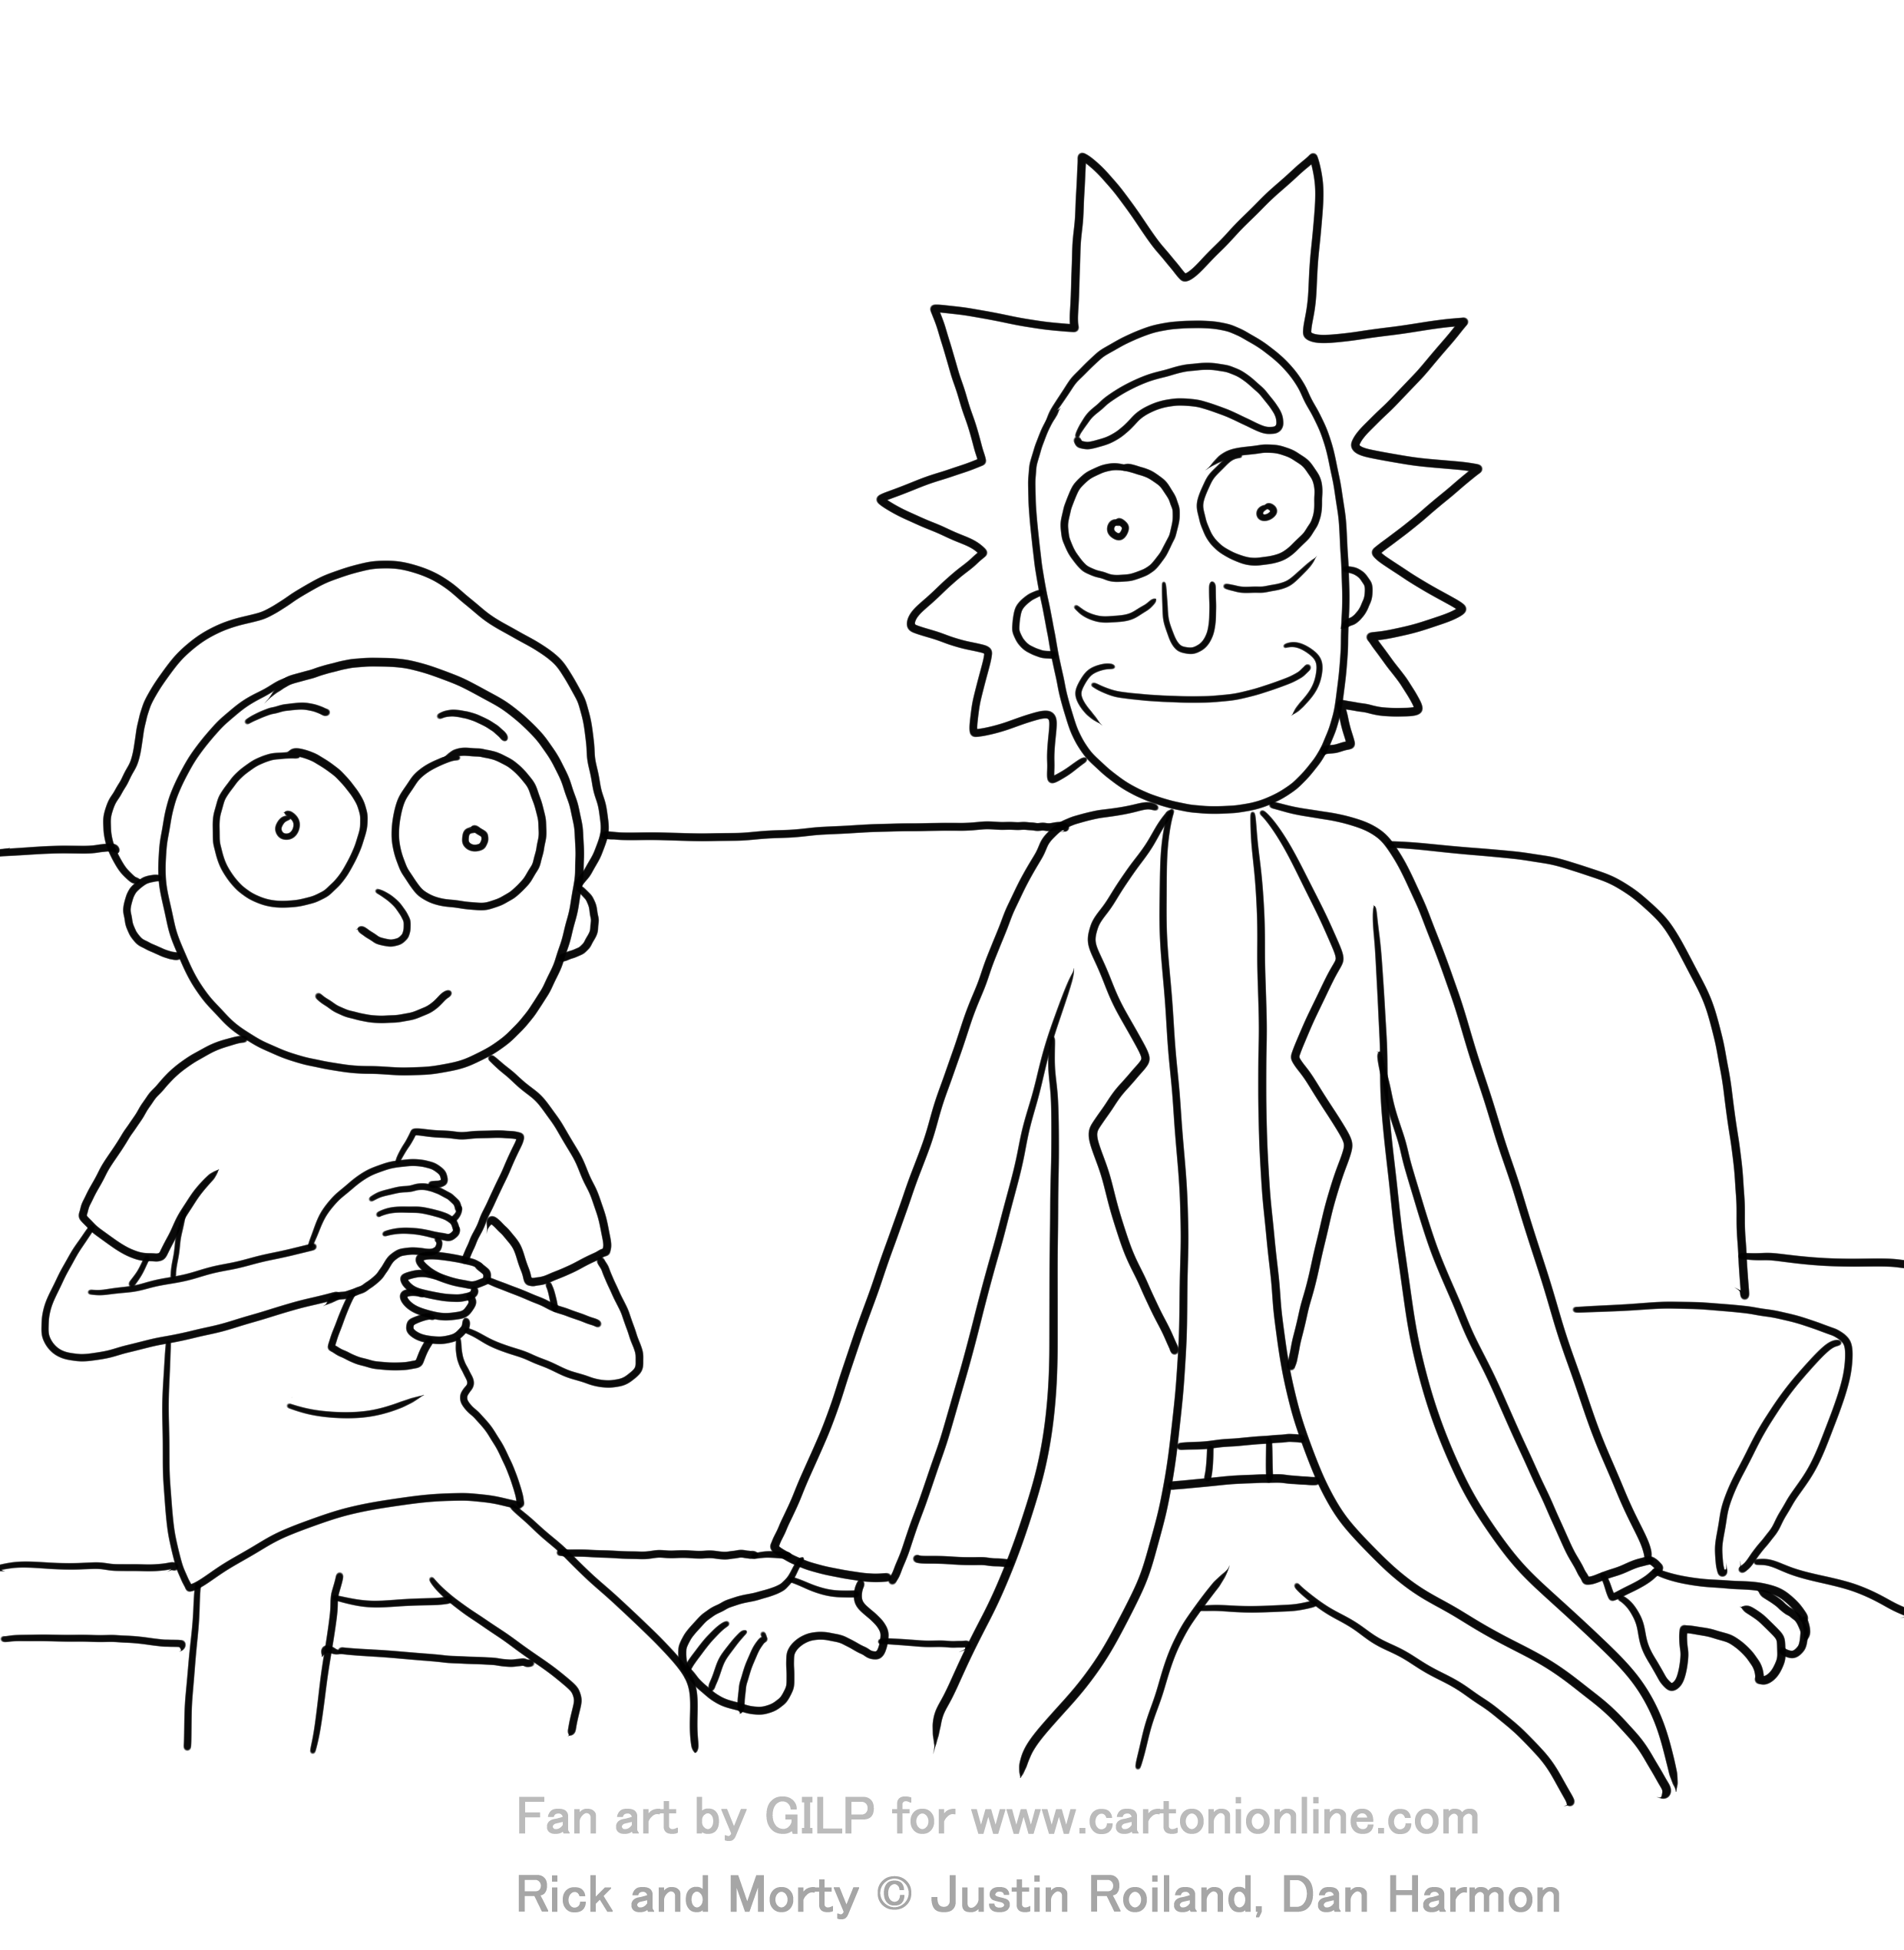 Rick et Morty 03 de Rick et Morty à imprimer et colorier